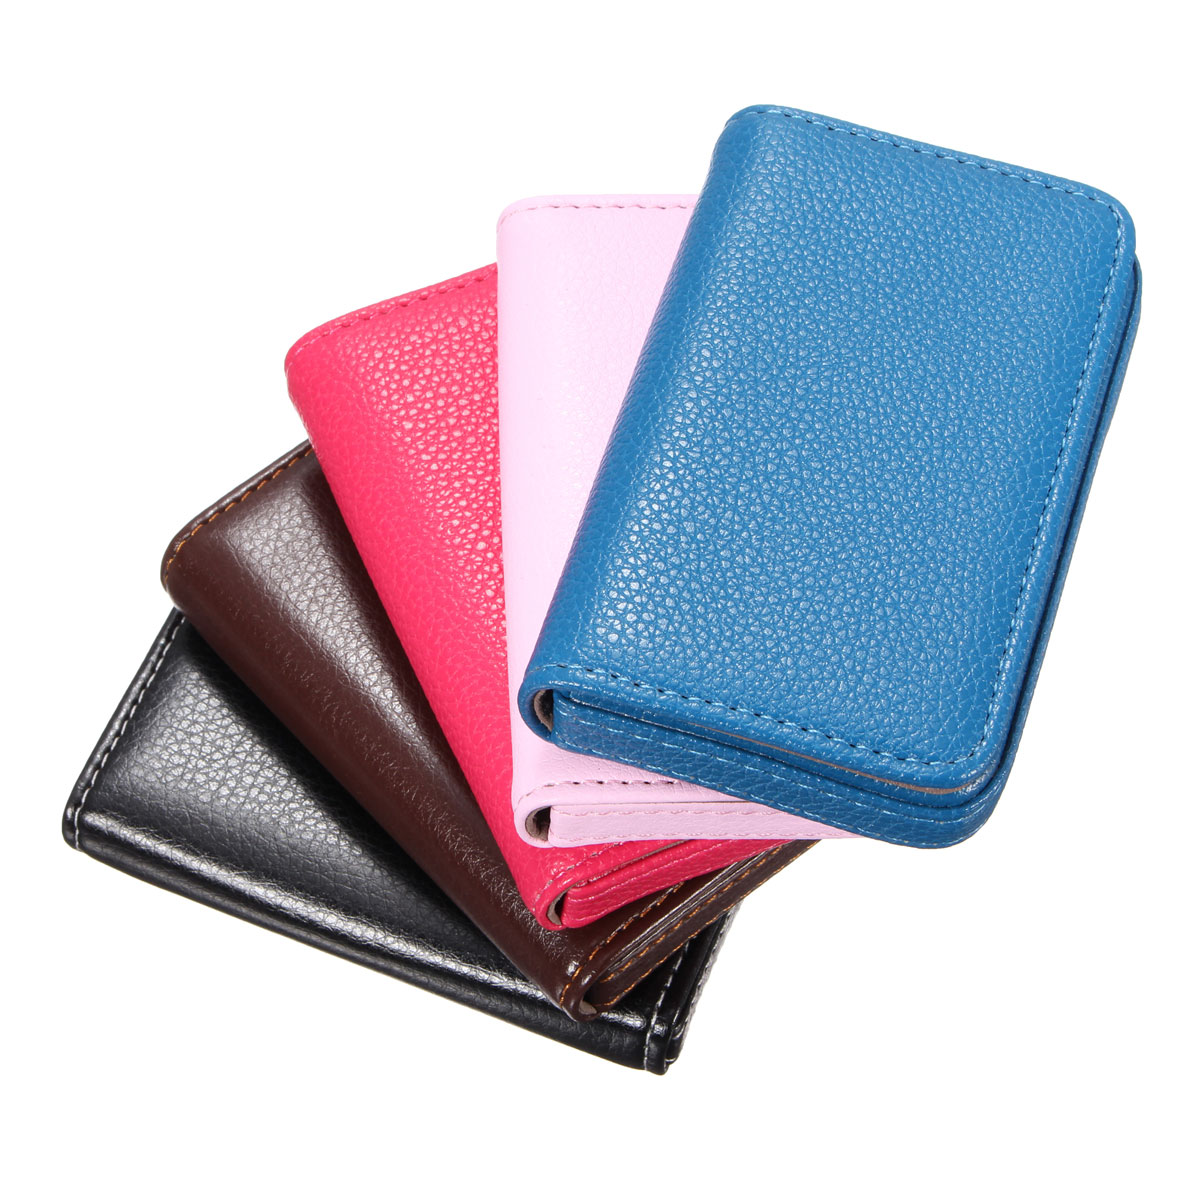 New Pocket Leather Business Credit ID Card Holder Wallet Storage Pocket Case | eBay